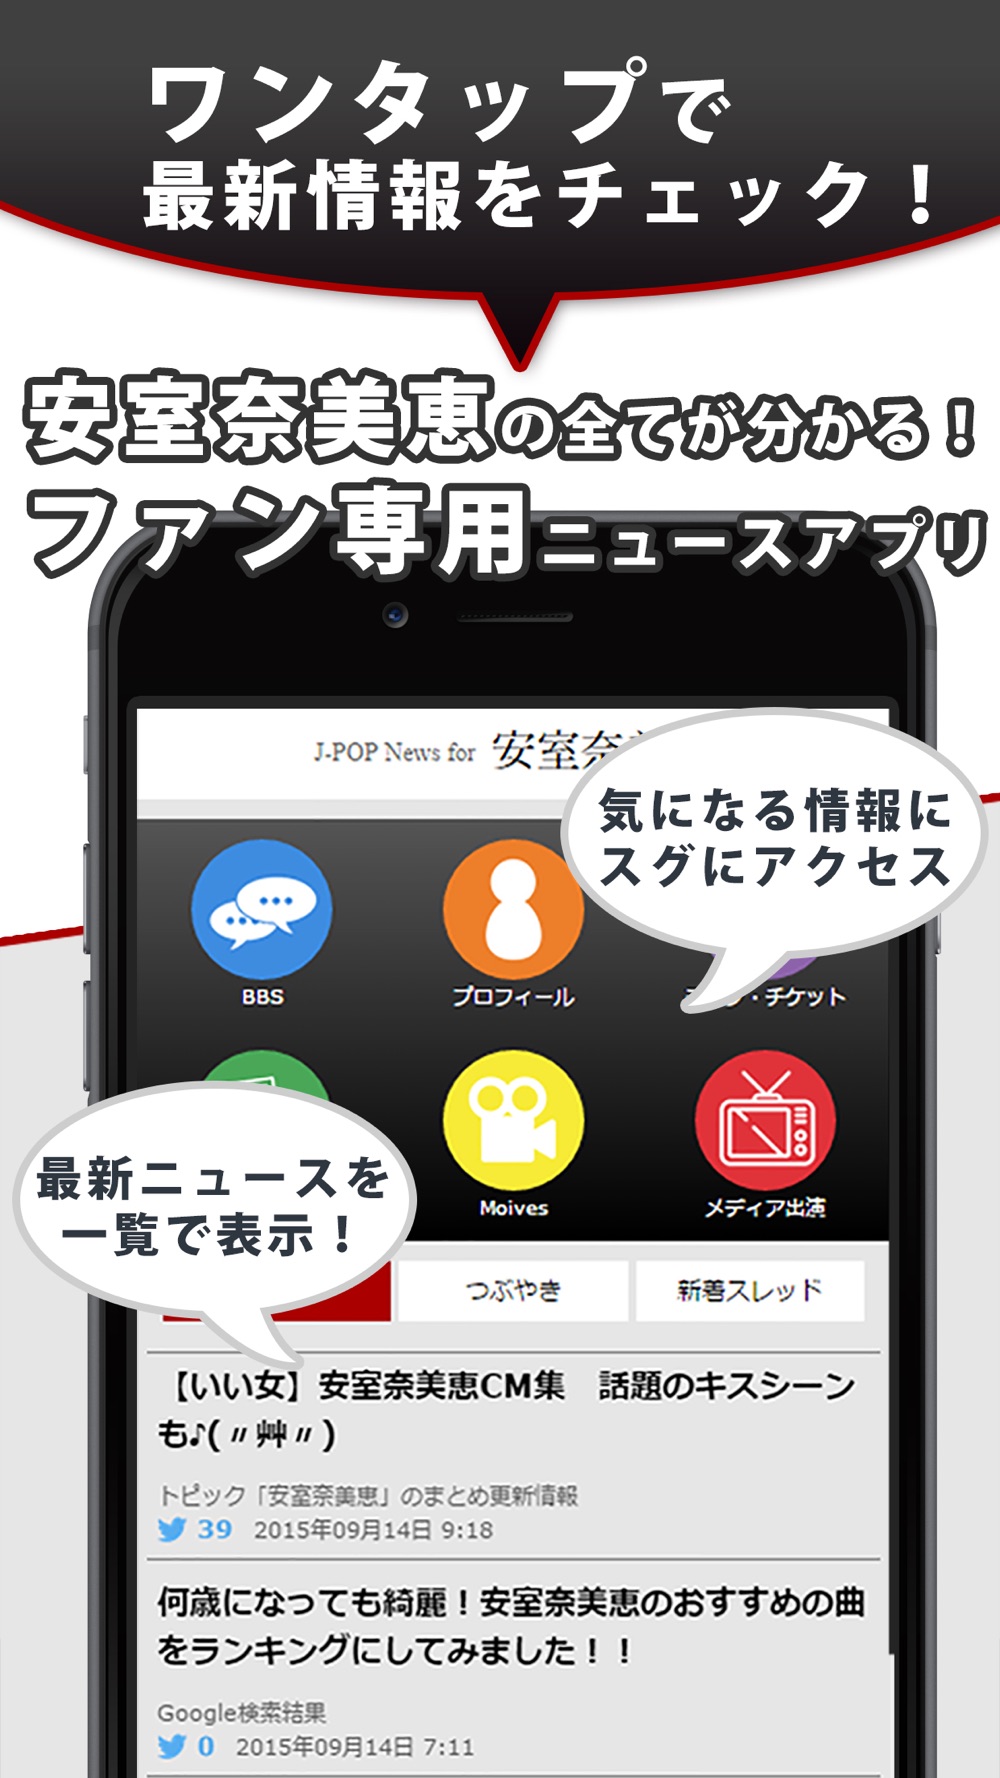 J Pop News For 安室奈美恵 無料で使えるニュースアプリ Free Download App For Iphone Steprimo Com